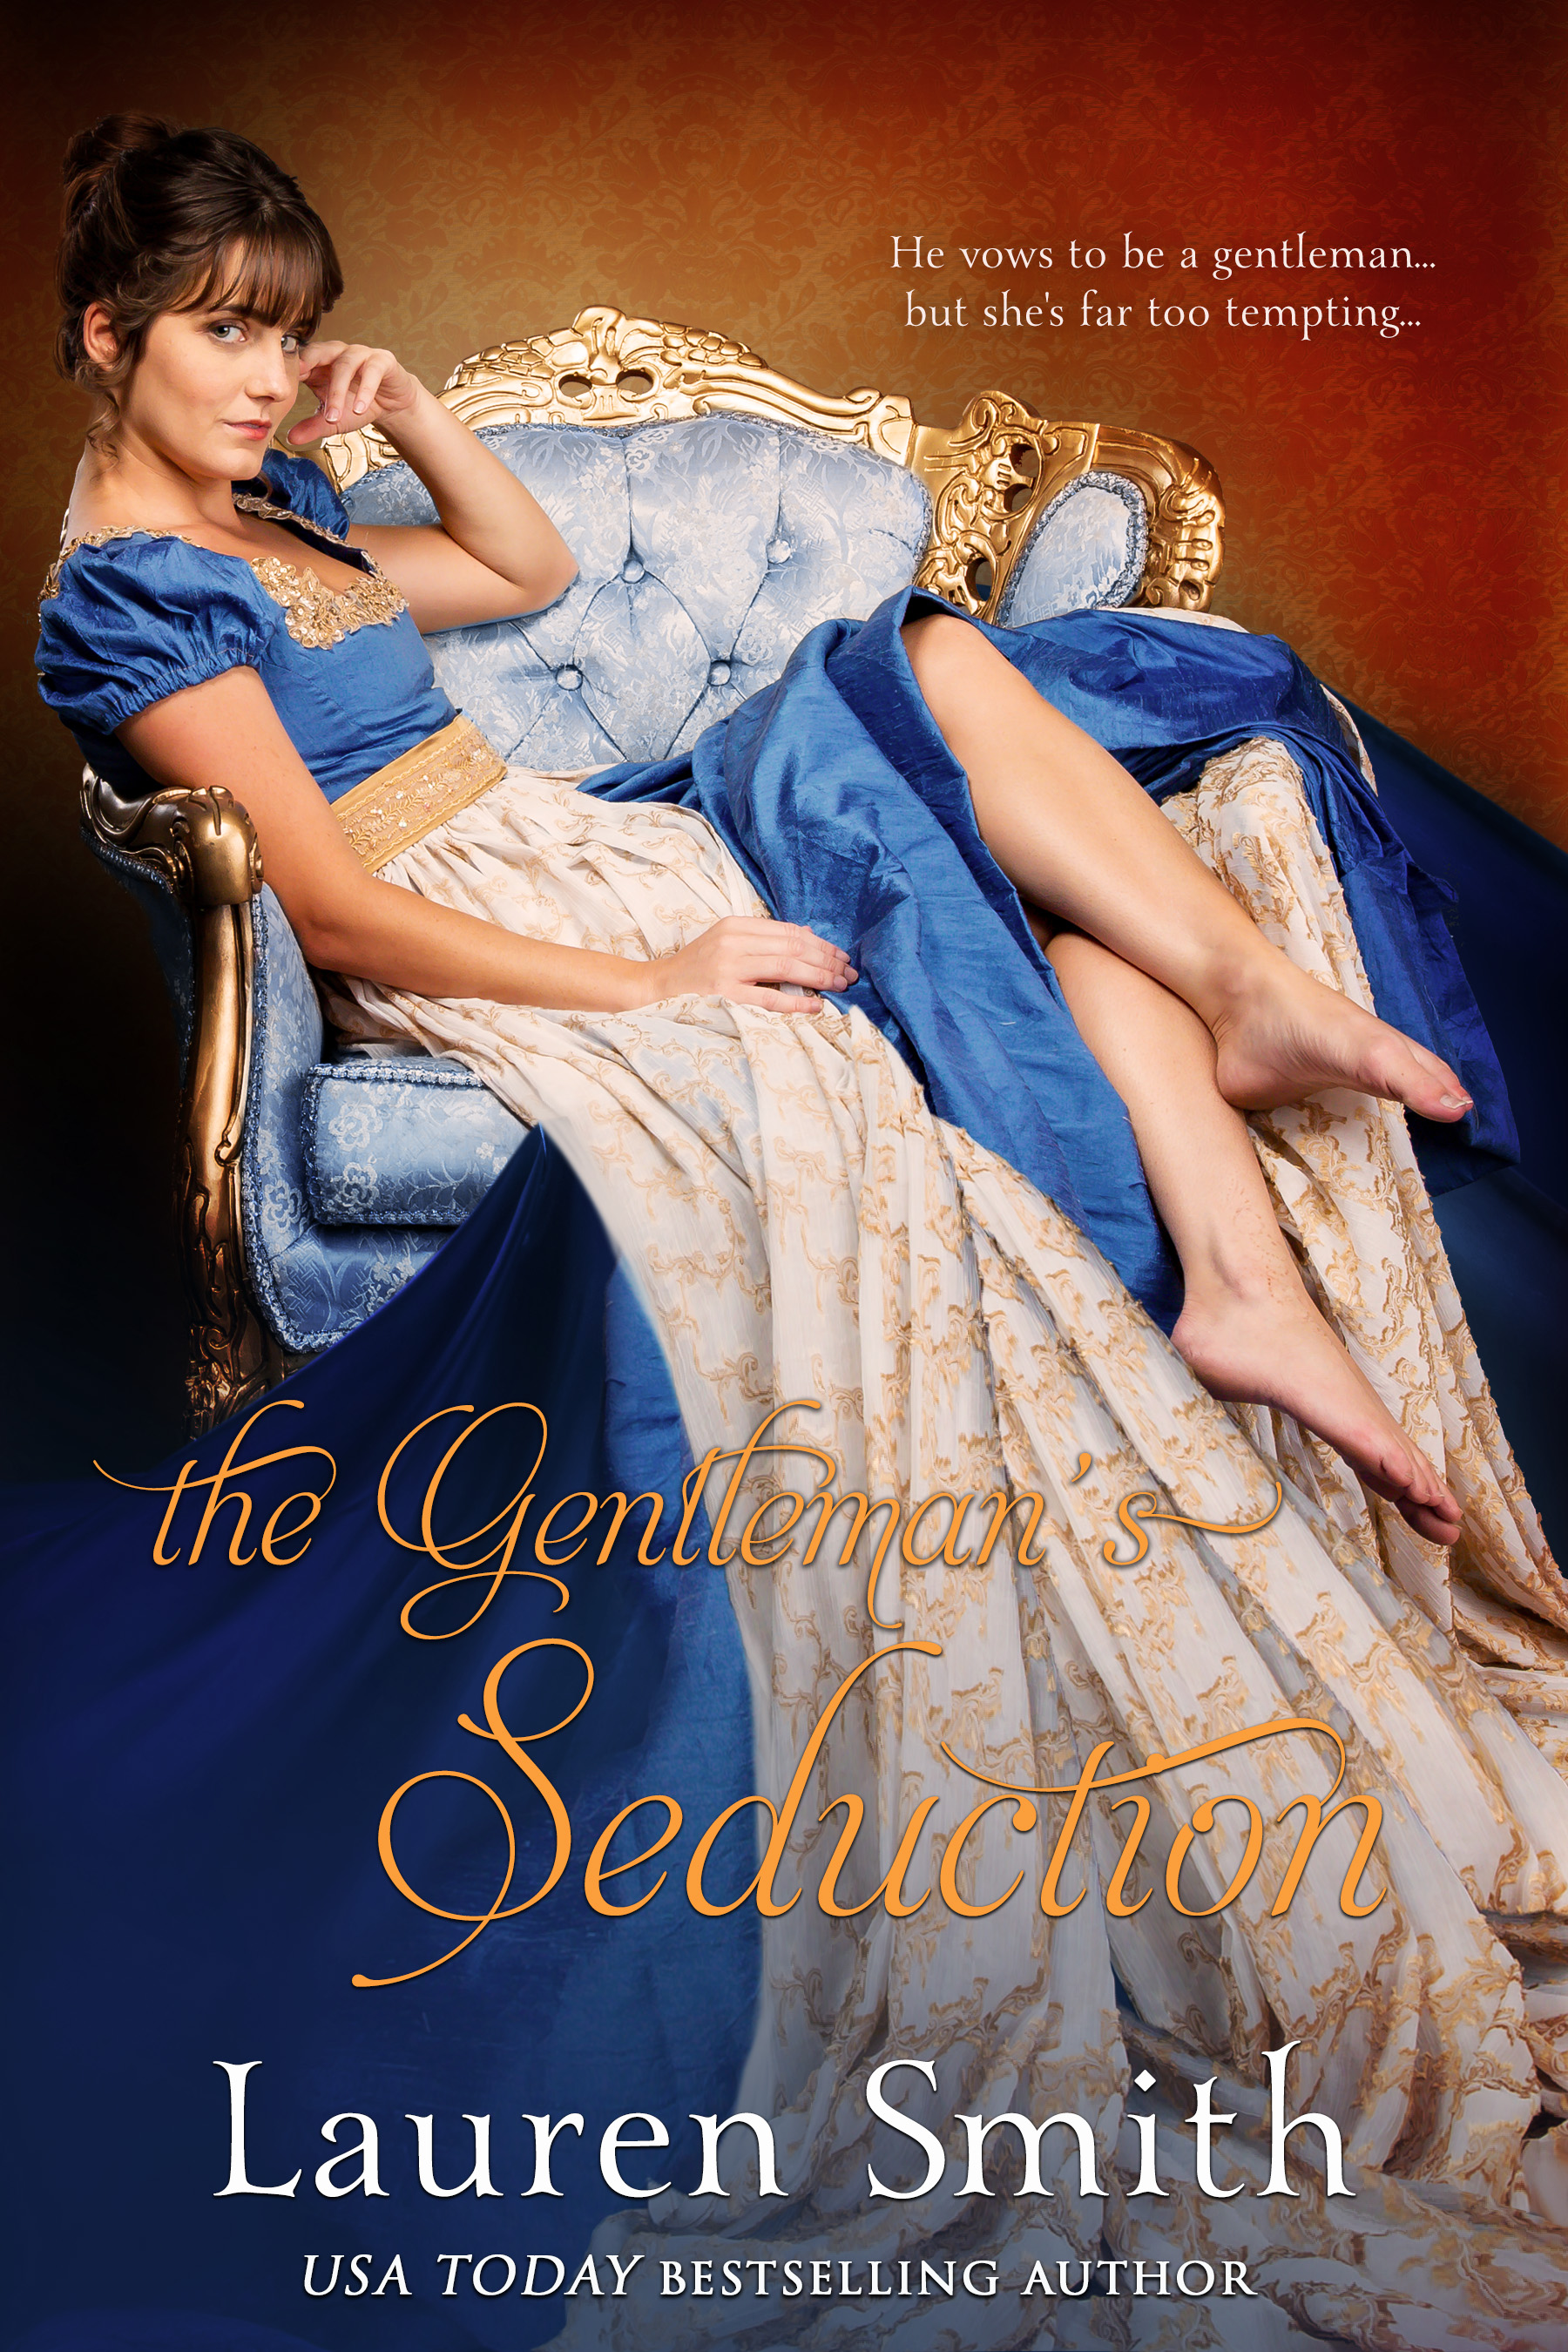 The Gentleman’s Seduction